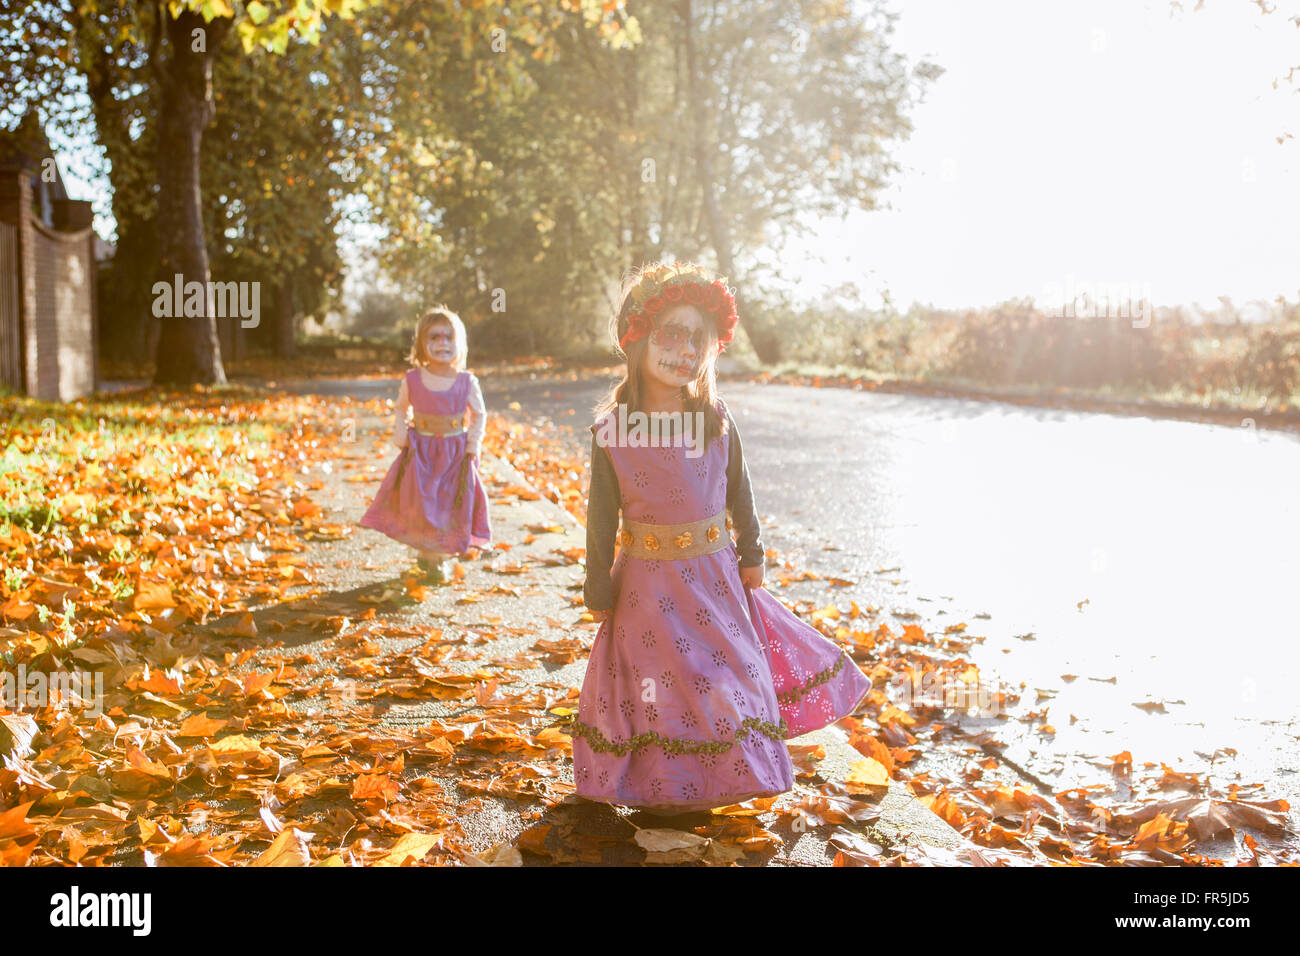 Niñito niñas en Halloween Disfraces caminando en hojas de otoño Foto de stock